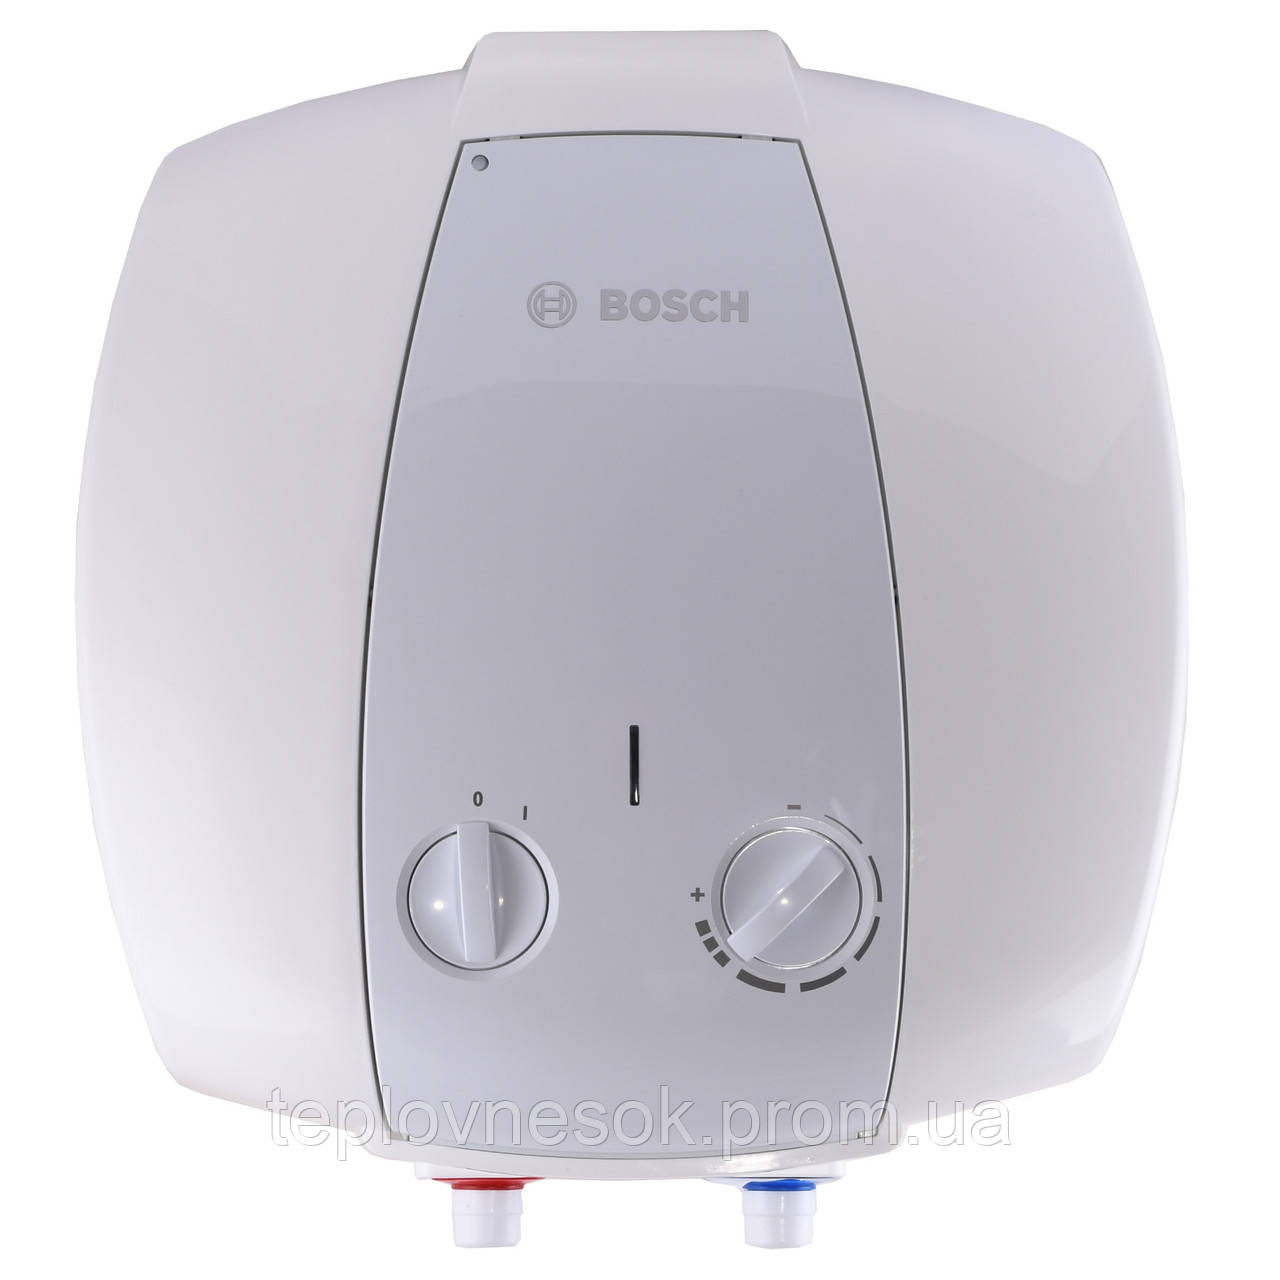 Водонагрівач Bosch Tronic 2000 TR 2000 10 B / 10 л 1500 W (над мийкою)